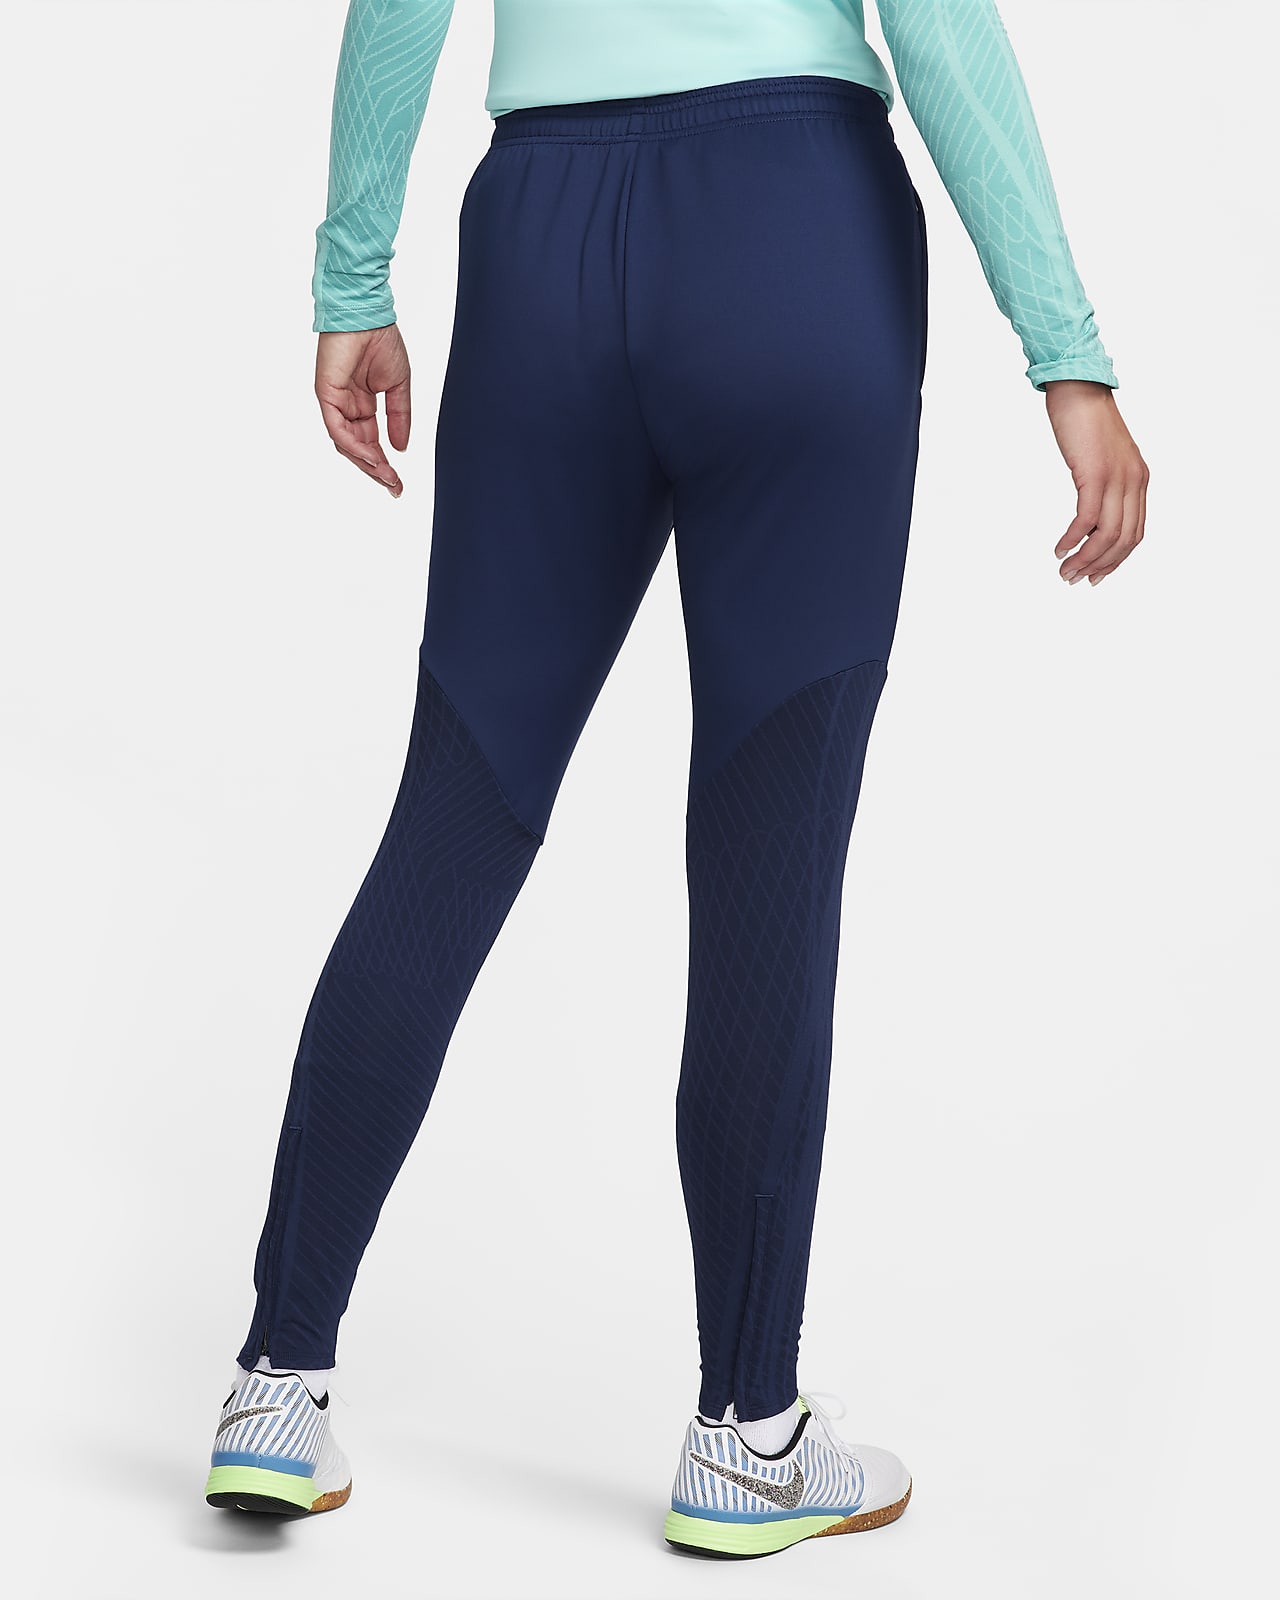 Nike Sportswear Phoenix Fleece Women's High-Waisted Cropped Sweatpants. Nike .com